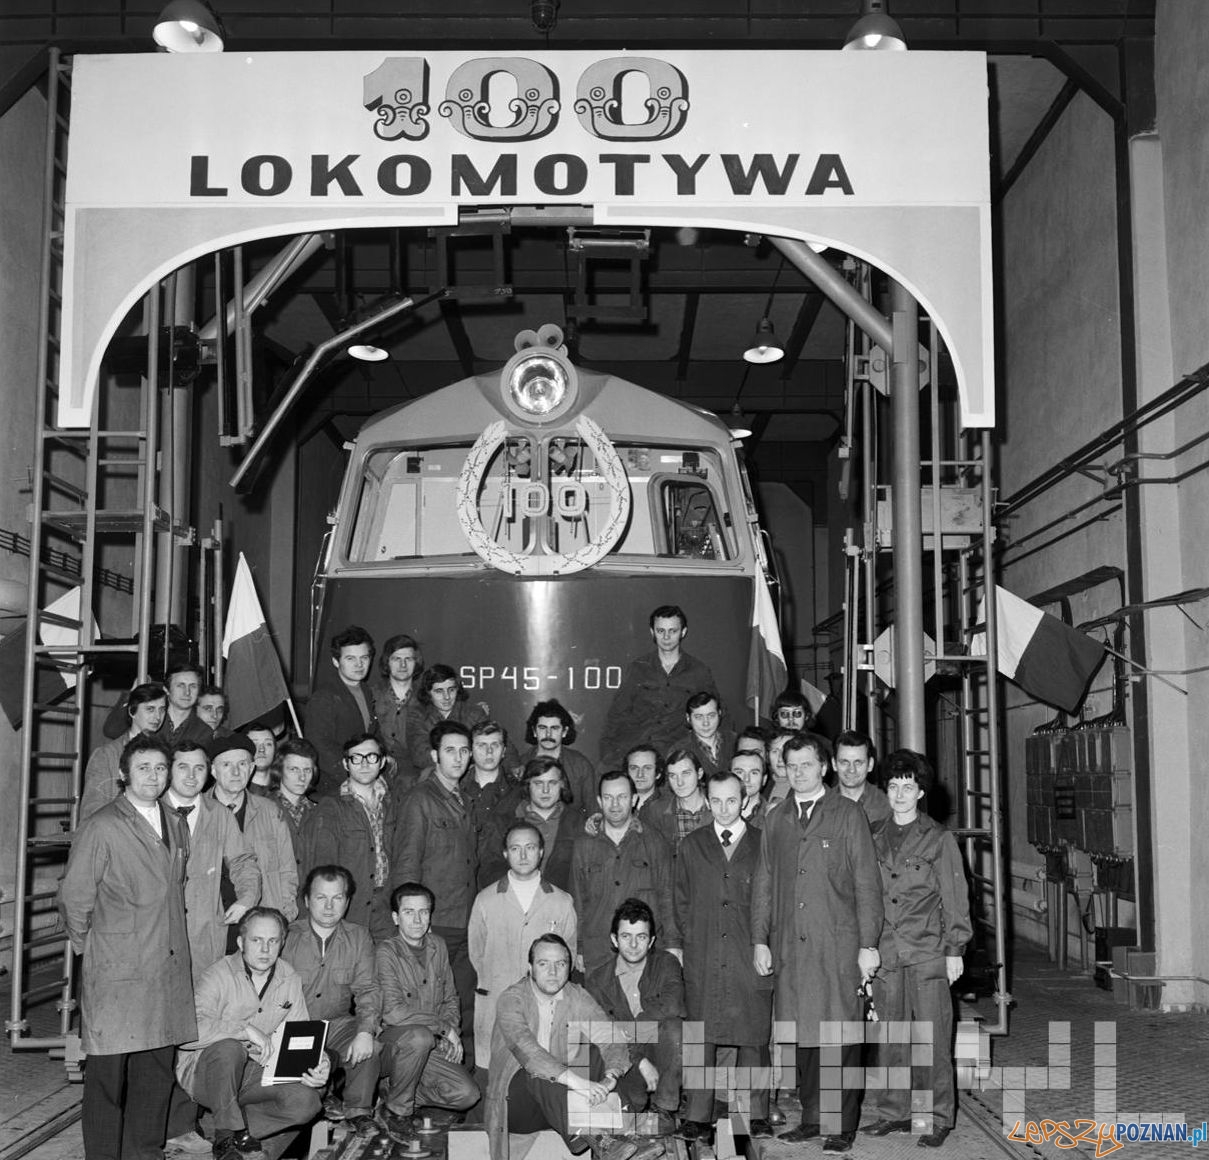 100 lokomotywa spalinowa wyprodukowana w Zakładach Cegielskiego  Foto: Stanisław Wiktor / Cyryl